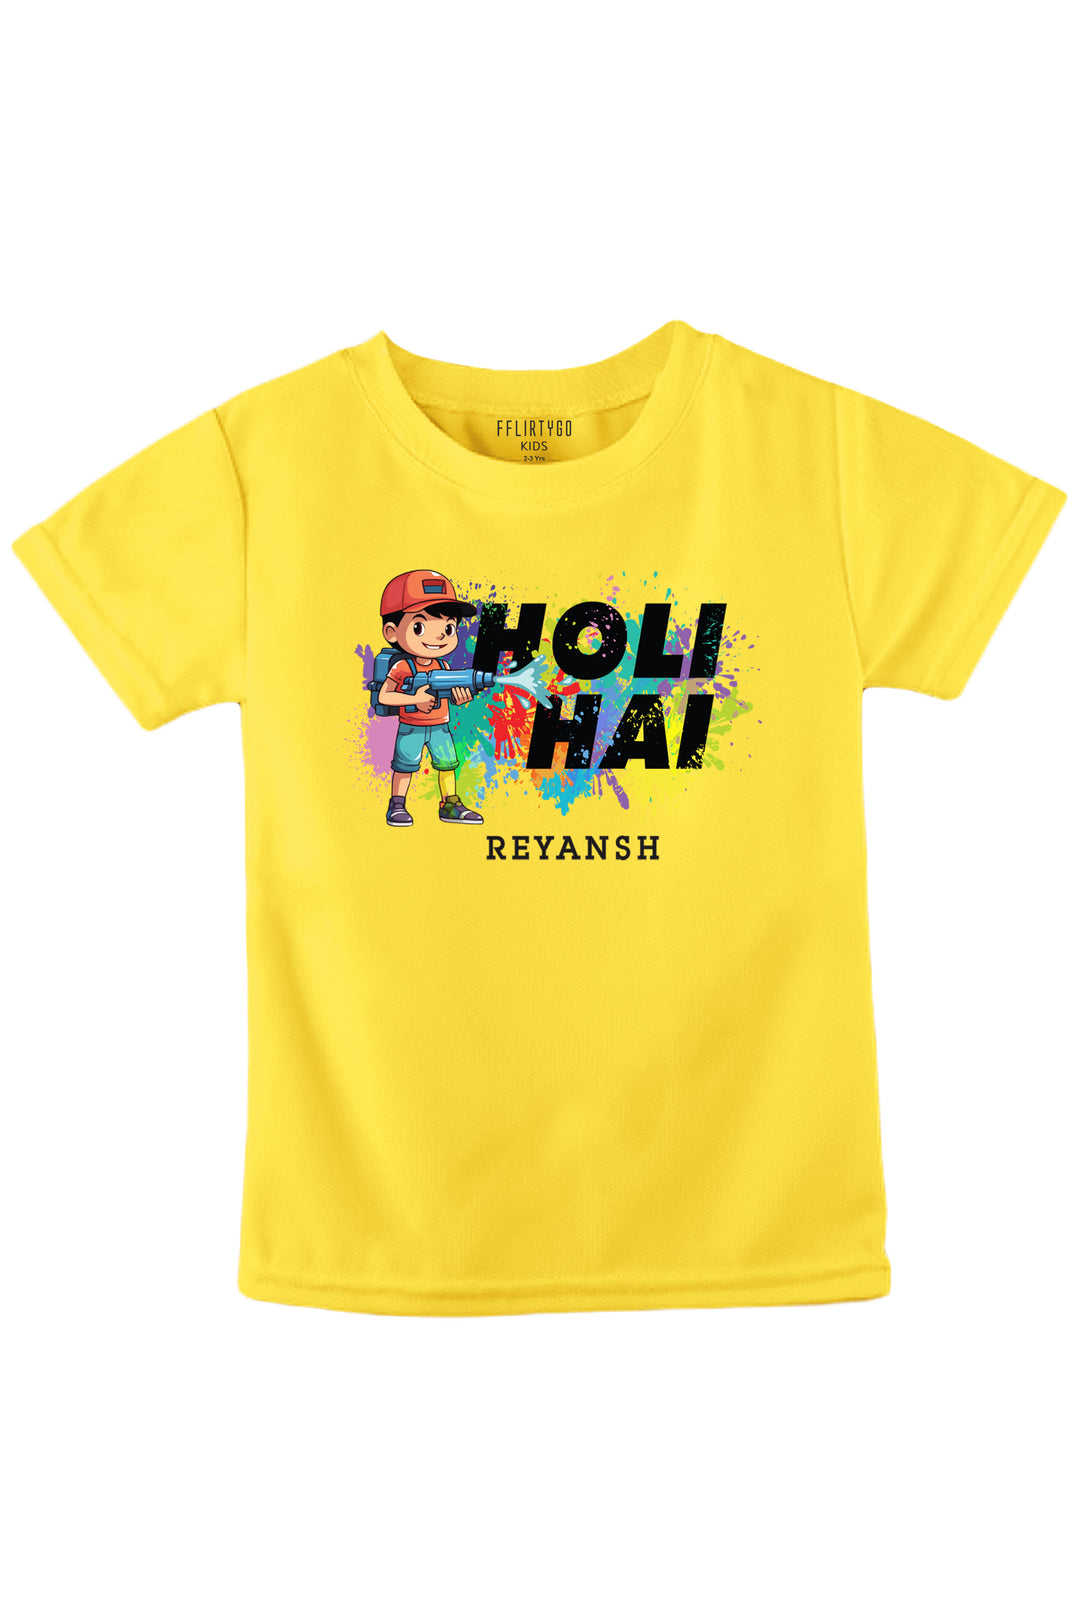 Holi Hai Kids T Shirt w/ Custom Name